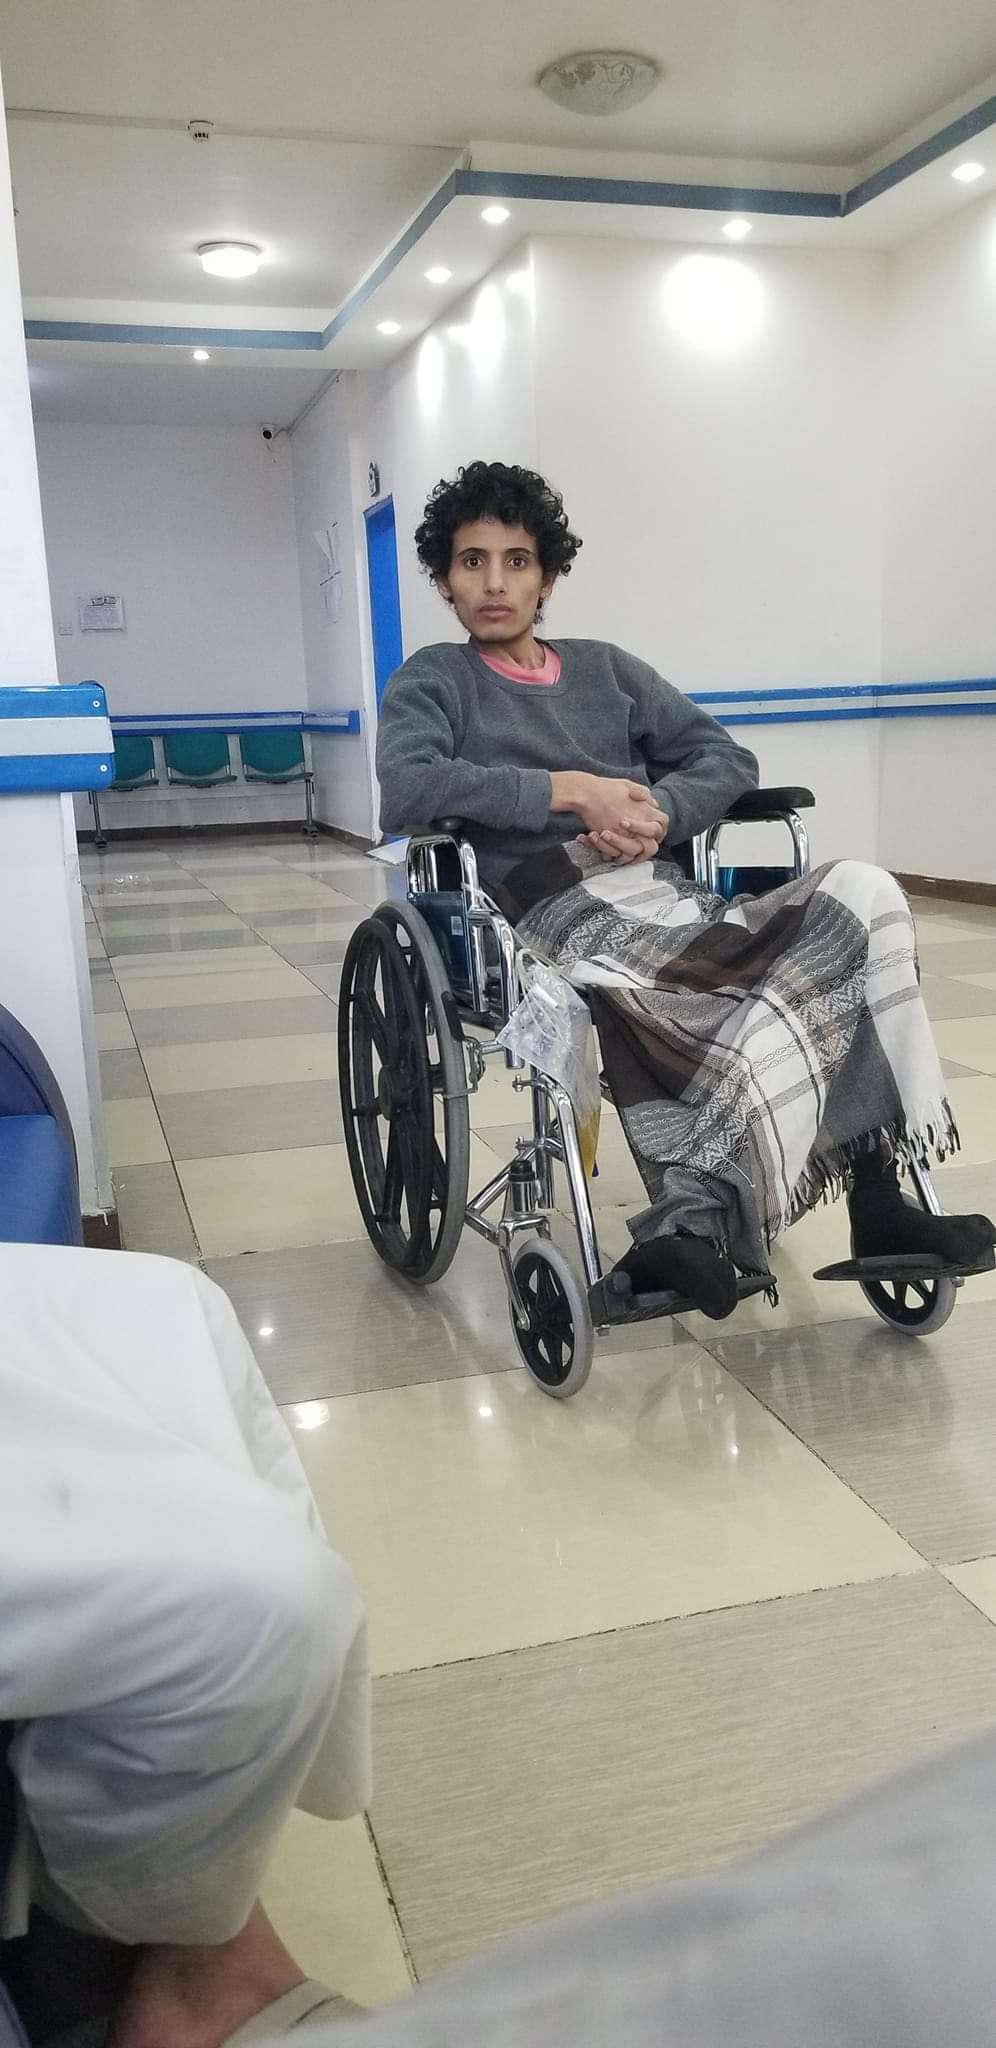 الافراج عن شاب ووالدته عقب اعتقاله داخل مستشفى بصنعاء منذ ٧ اشهر ماهي قصته؟